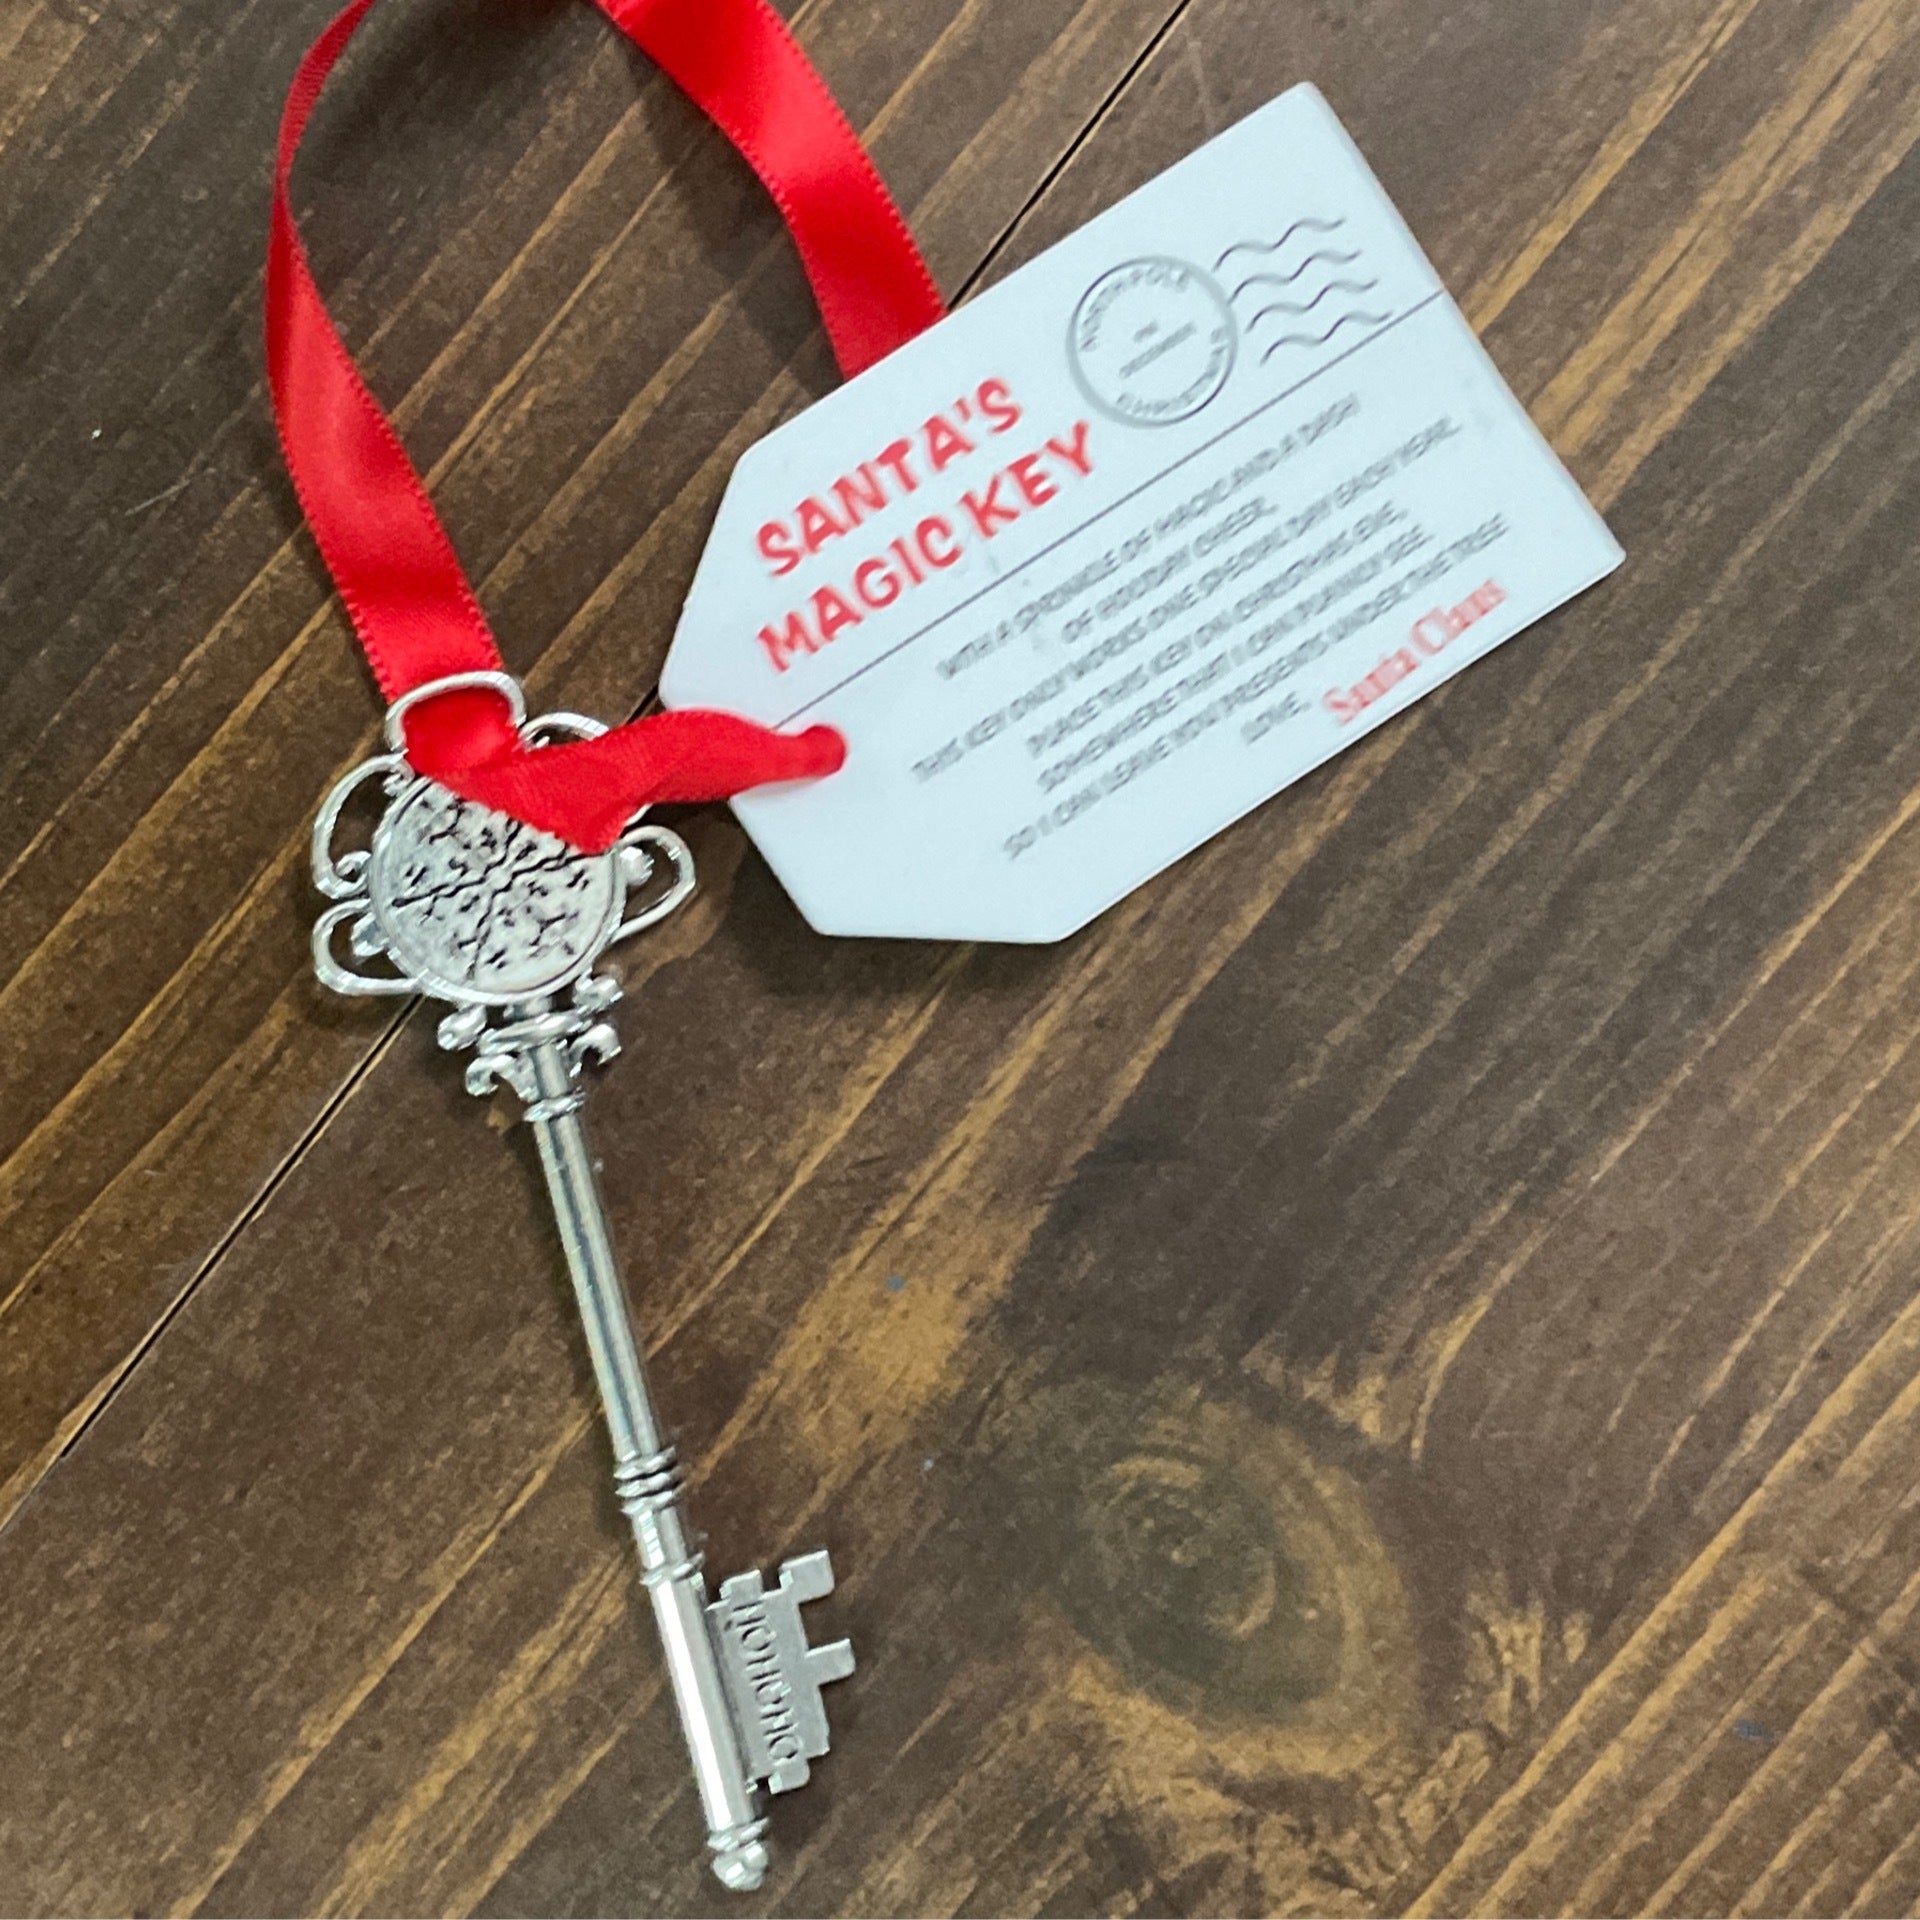 Community Santa's Magic Key